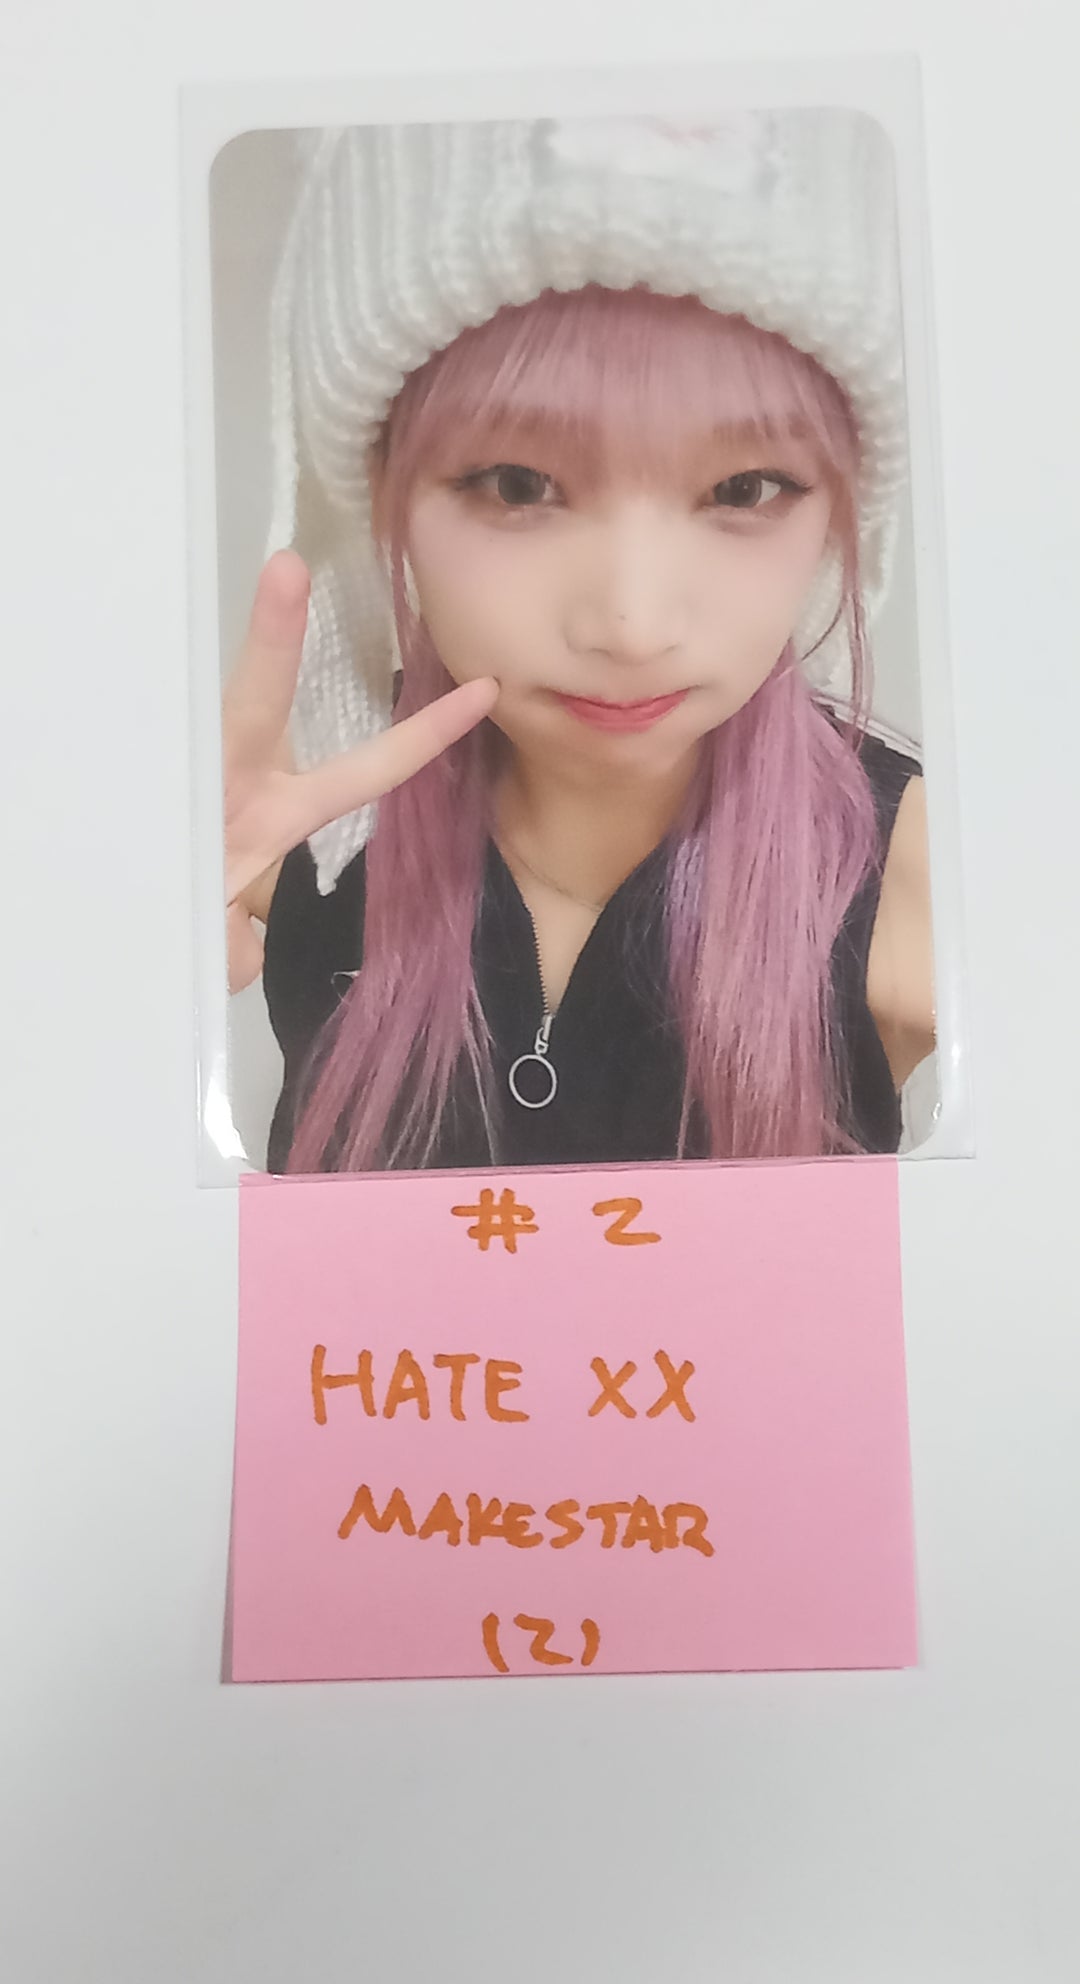 イェナ「HATE XX」 - Makestar ファンサイン会フォトカード第2弾 [ポカVer.] [23.09.07]